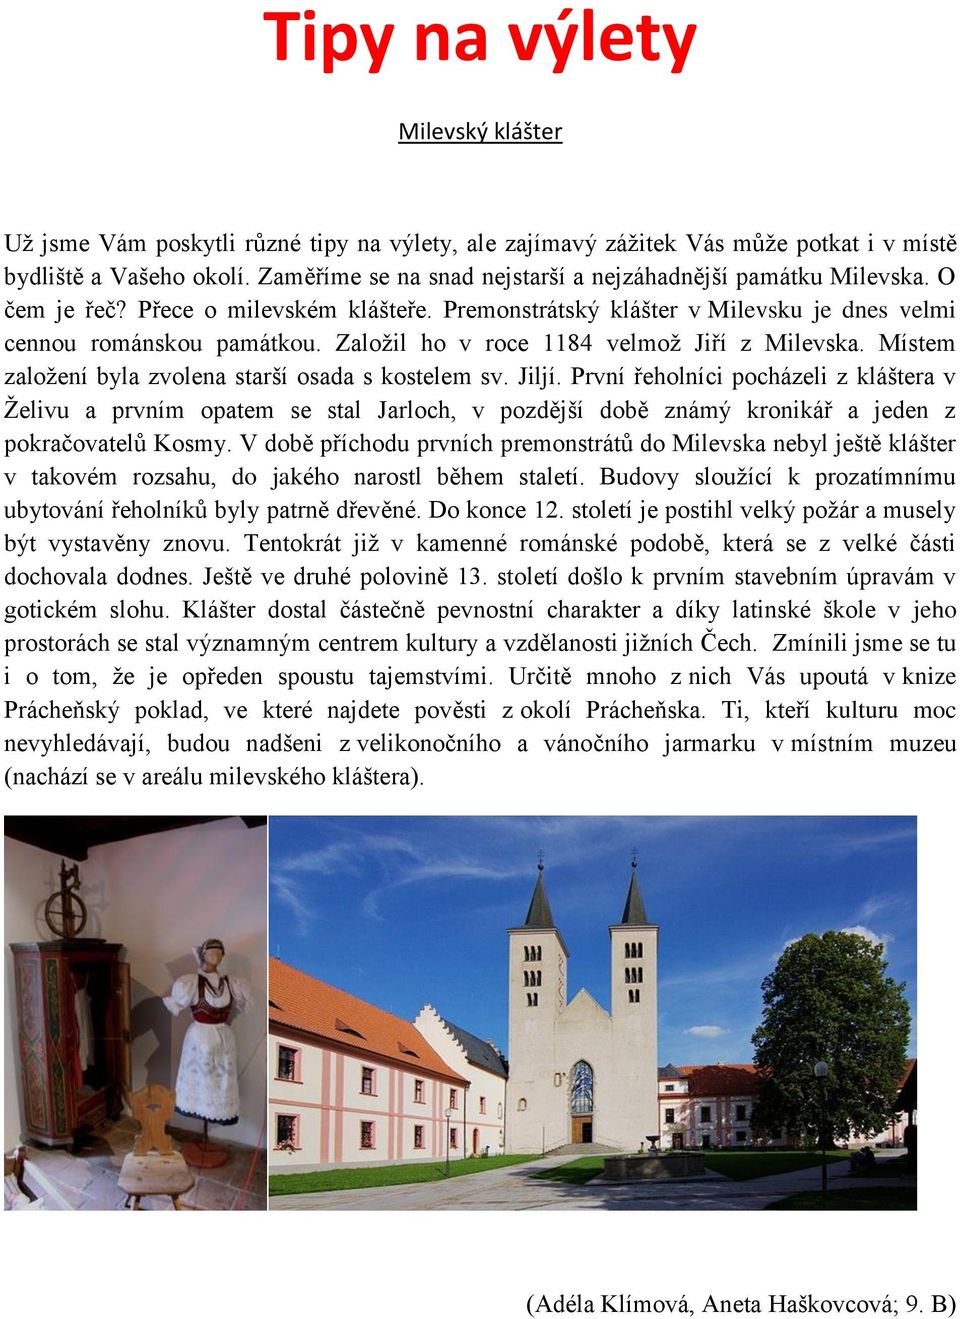 Založil ho v roce 1184 velmož Jiří z Milevska. Místem založení byla zvolena starší osada s kostelem sv. Jiljí.